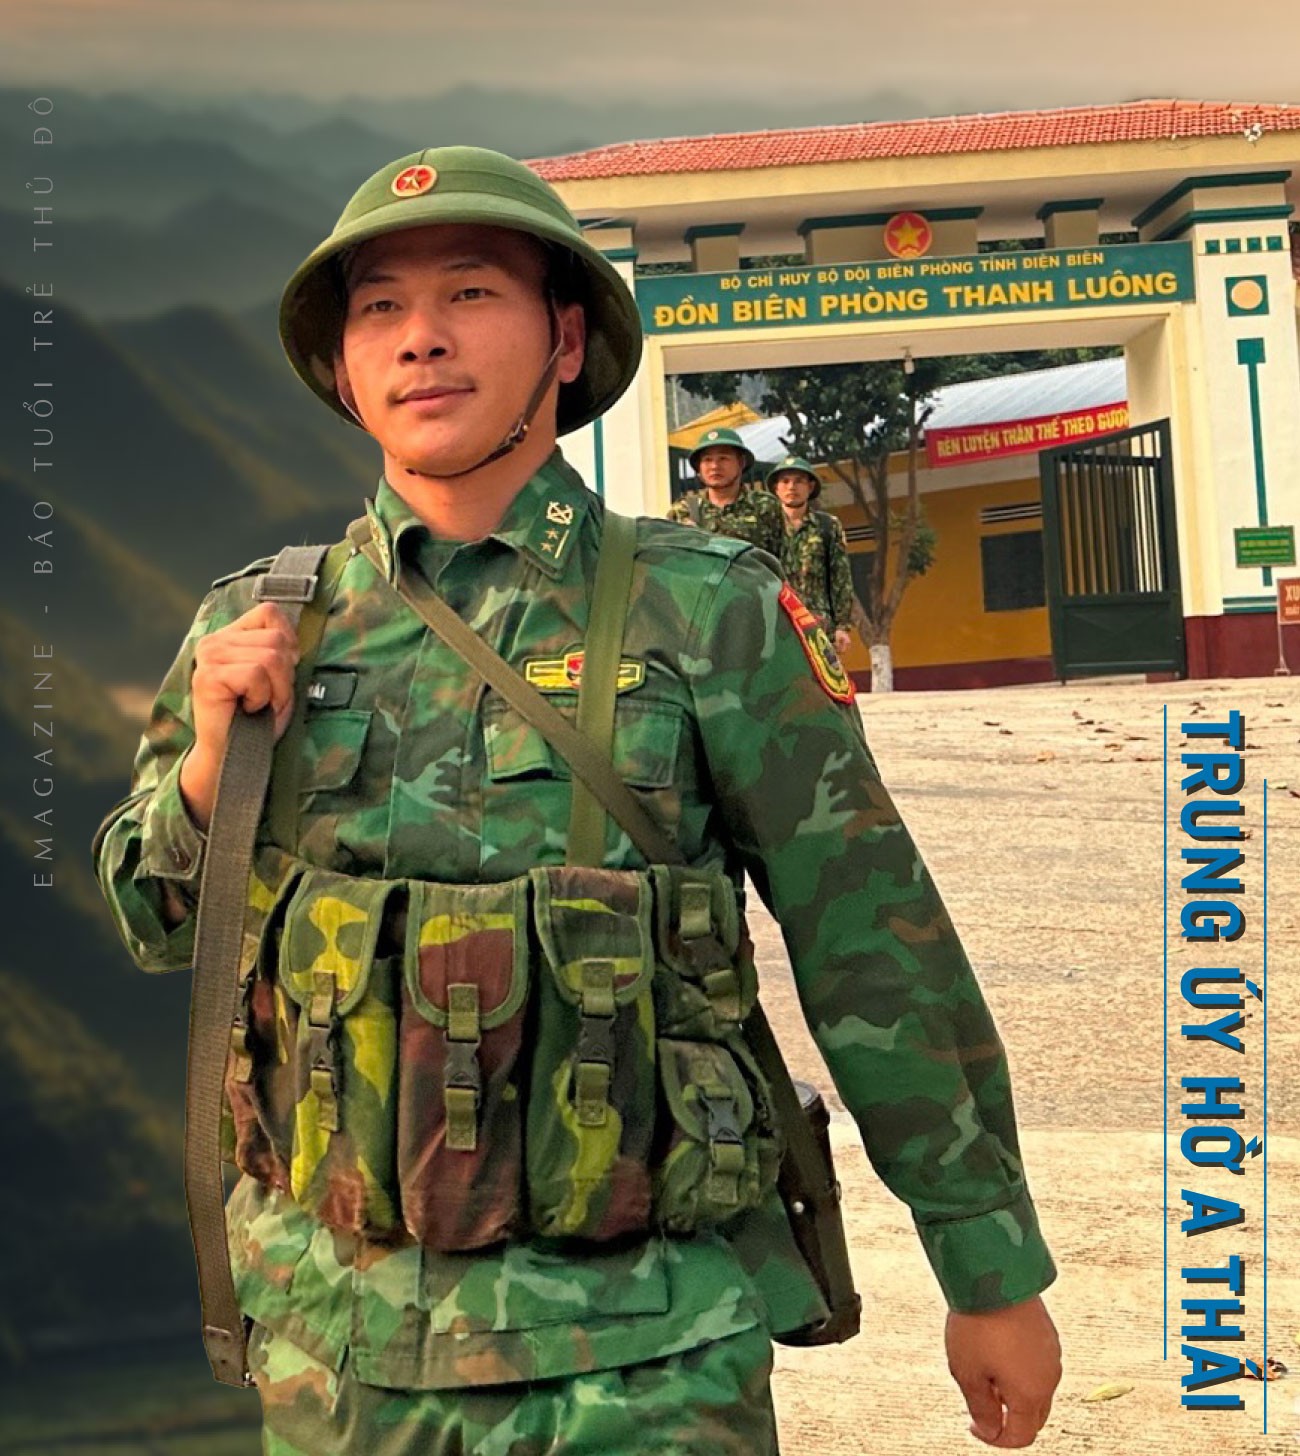 Bài 1 - Người Đội trưởng tận tụy ở Đồn Biên phòng Thanh Luông